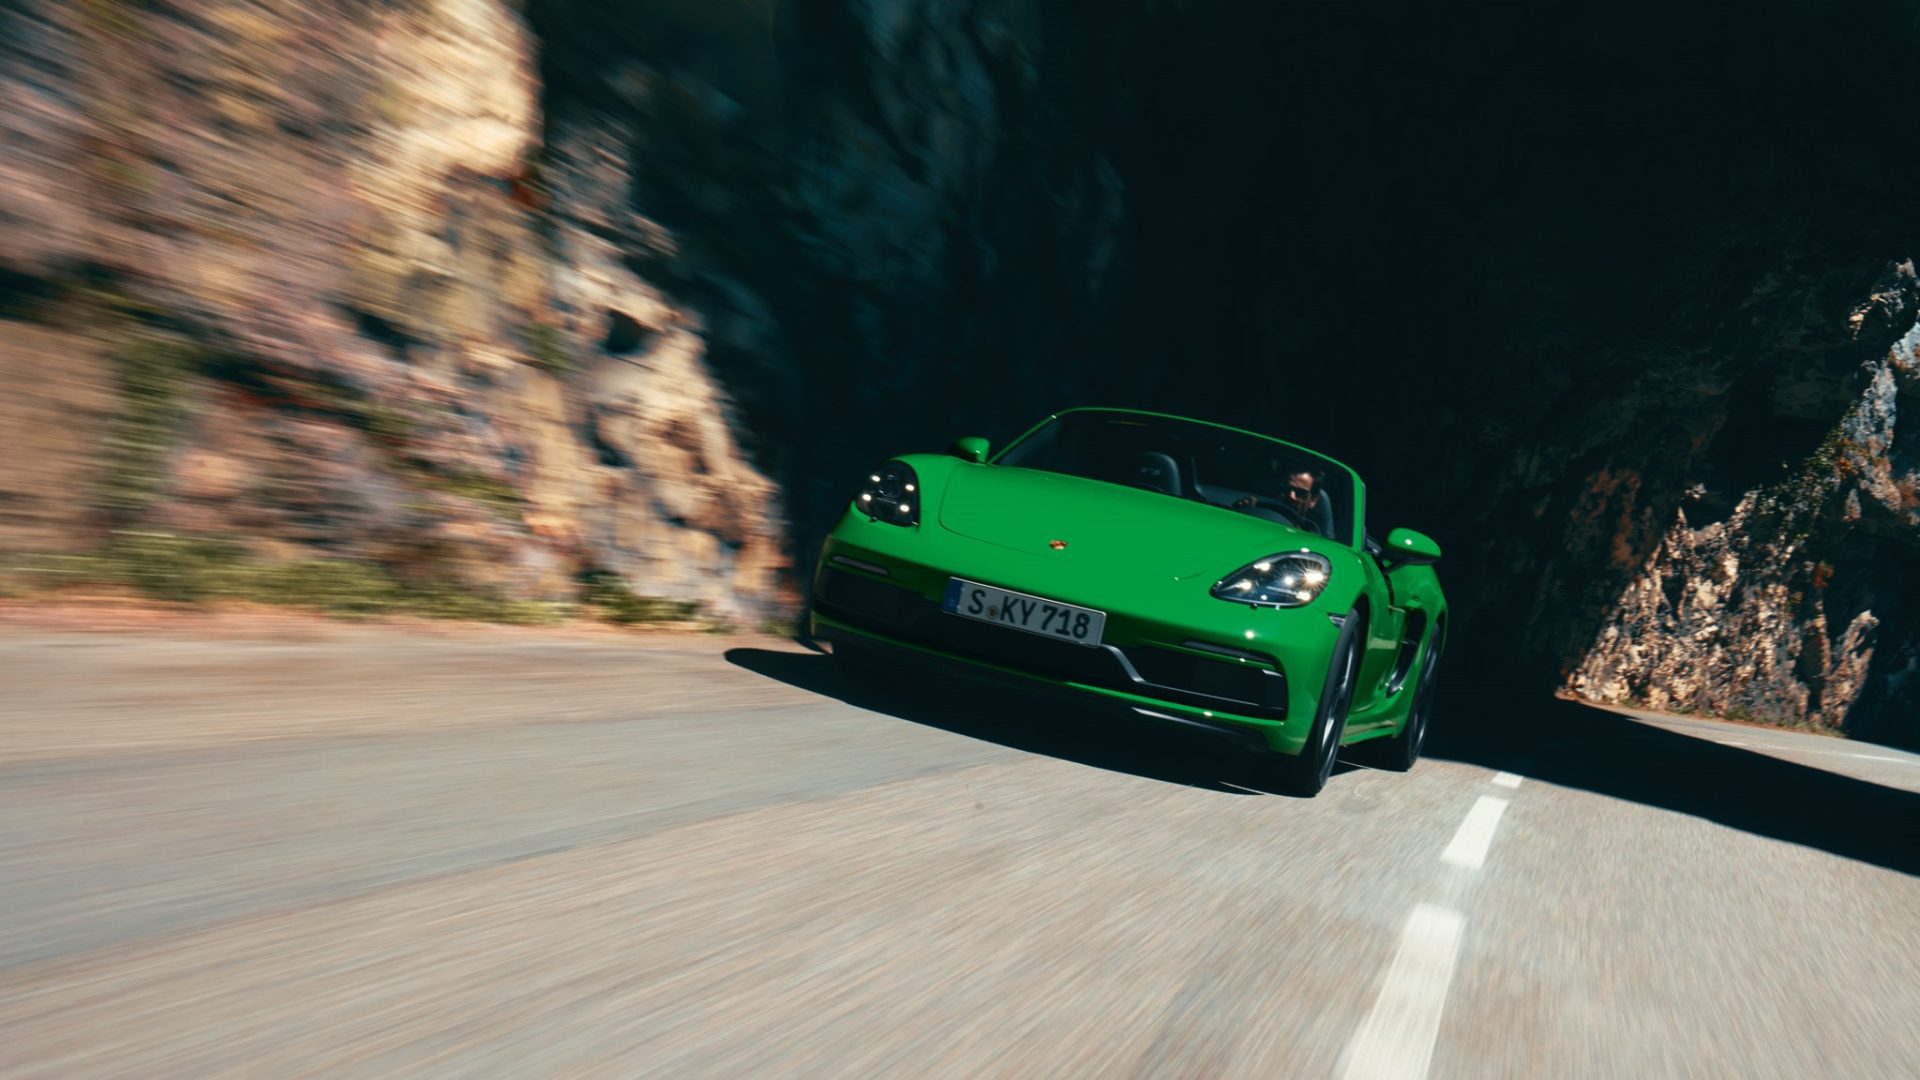 Vihreä Porsche 718 Boxster ajaa tiellä etuprofiili.